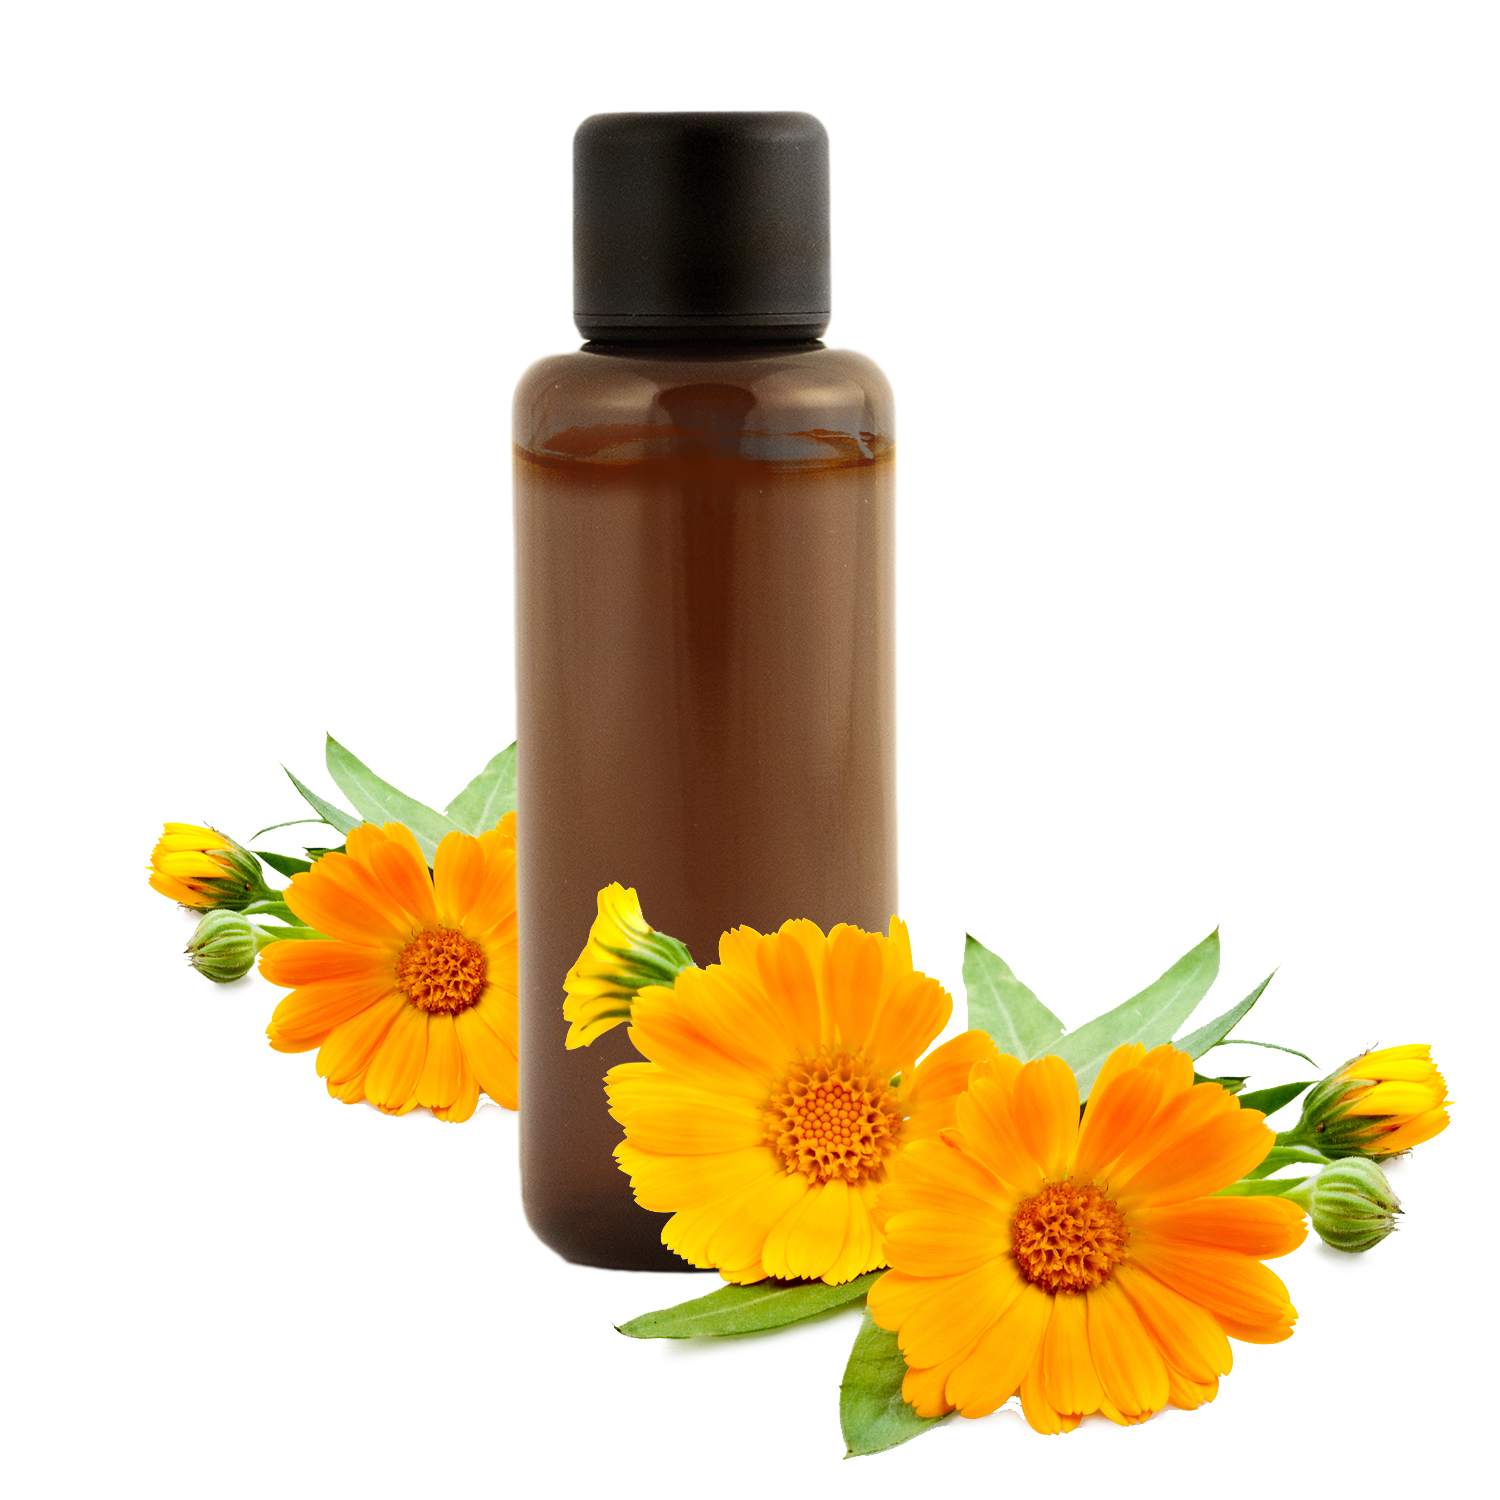 Macérât huileux de Calendula : bienfaits et utilisations en cosmétique  naturelle